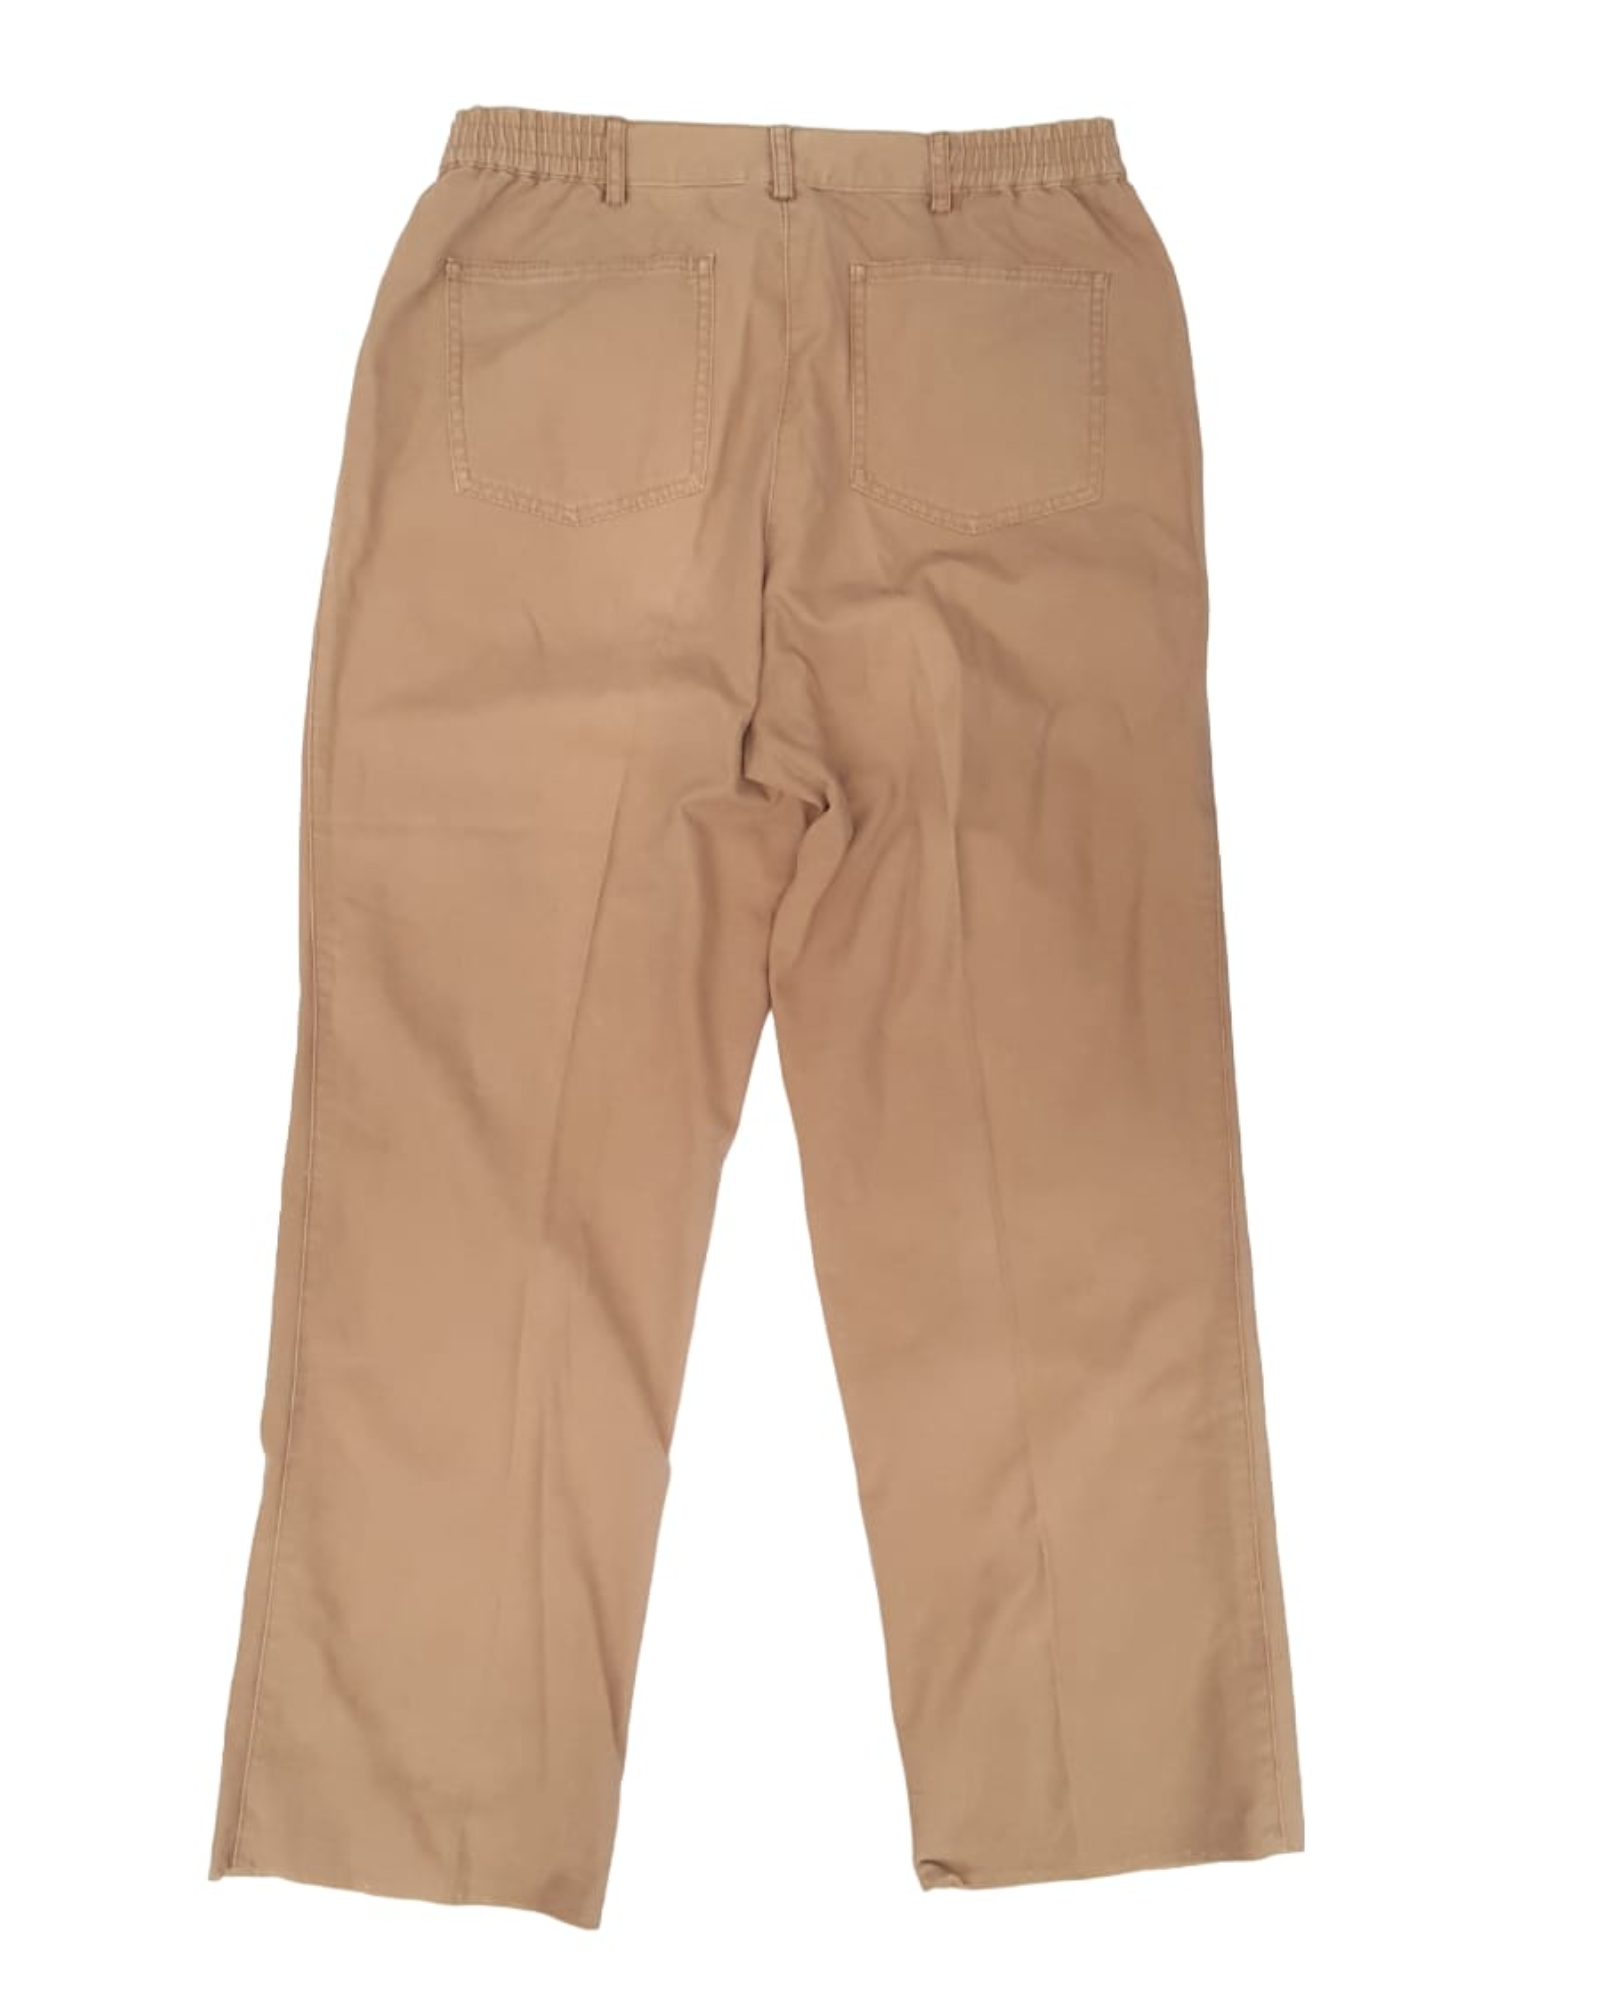 Pantalones Chinos Ruby Rd 2